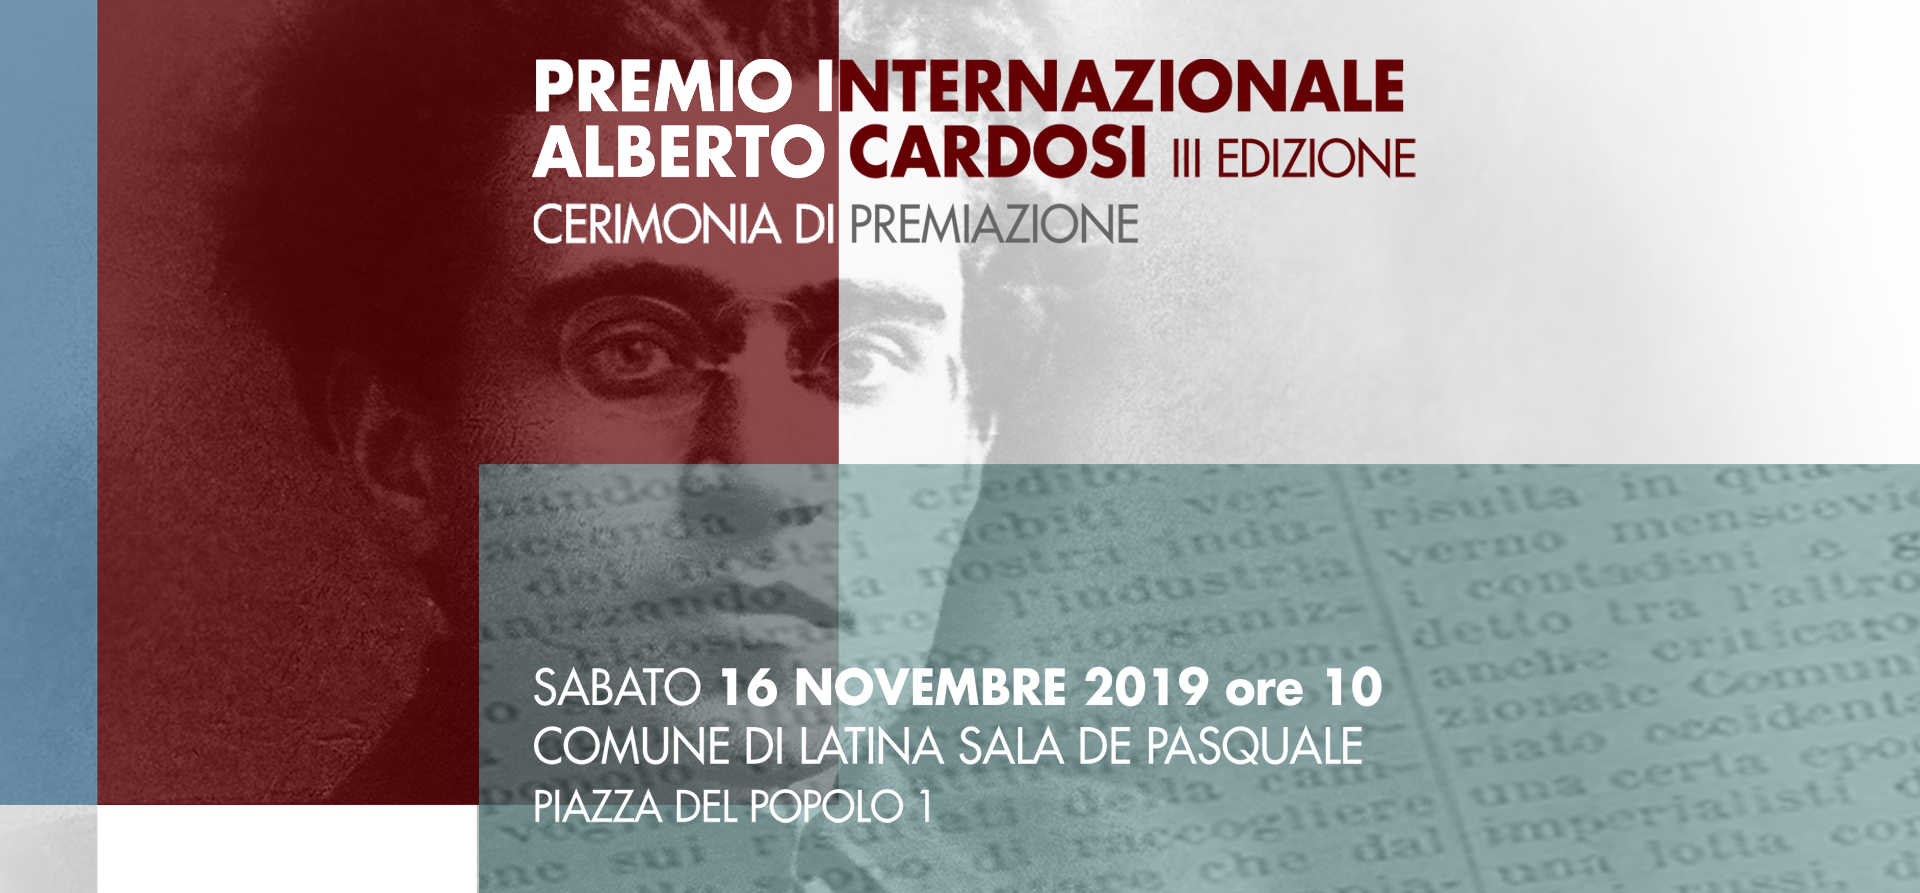 PREMIO INTERNAZIONALE ALBERTO CARDOSI